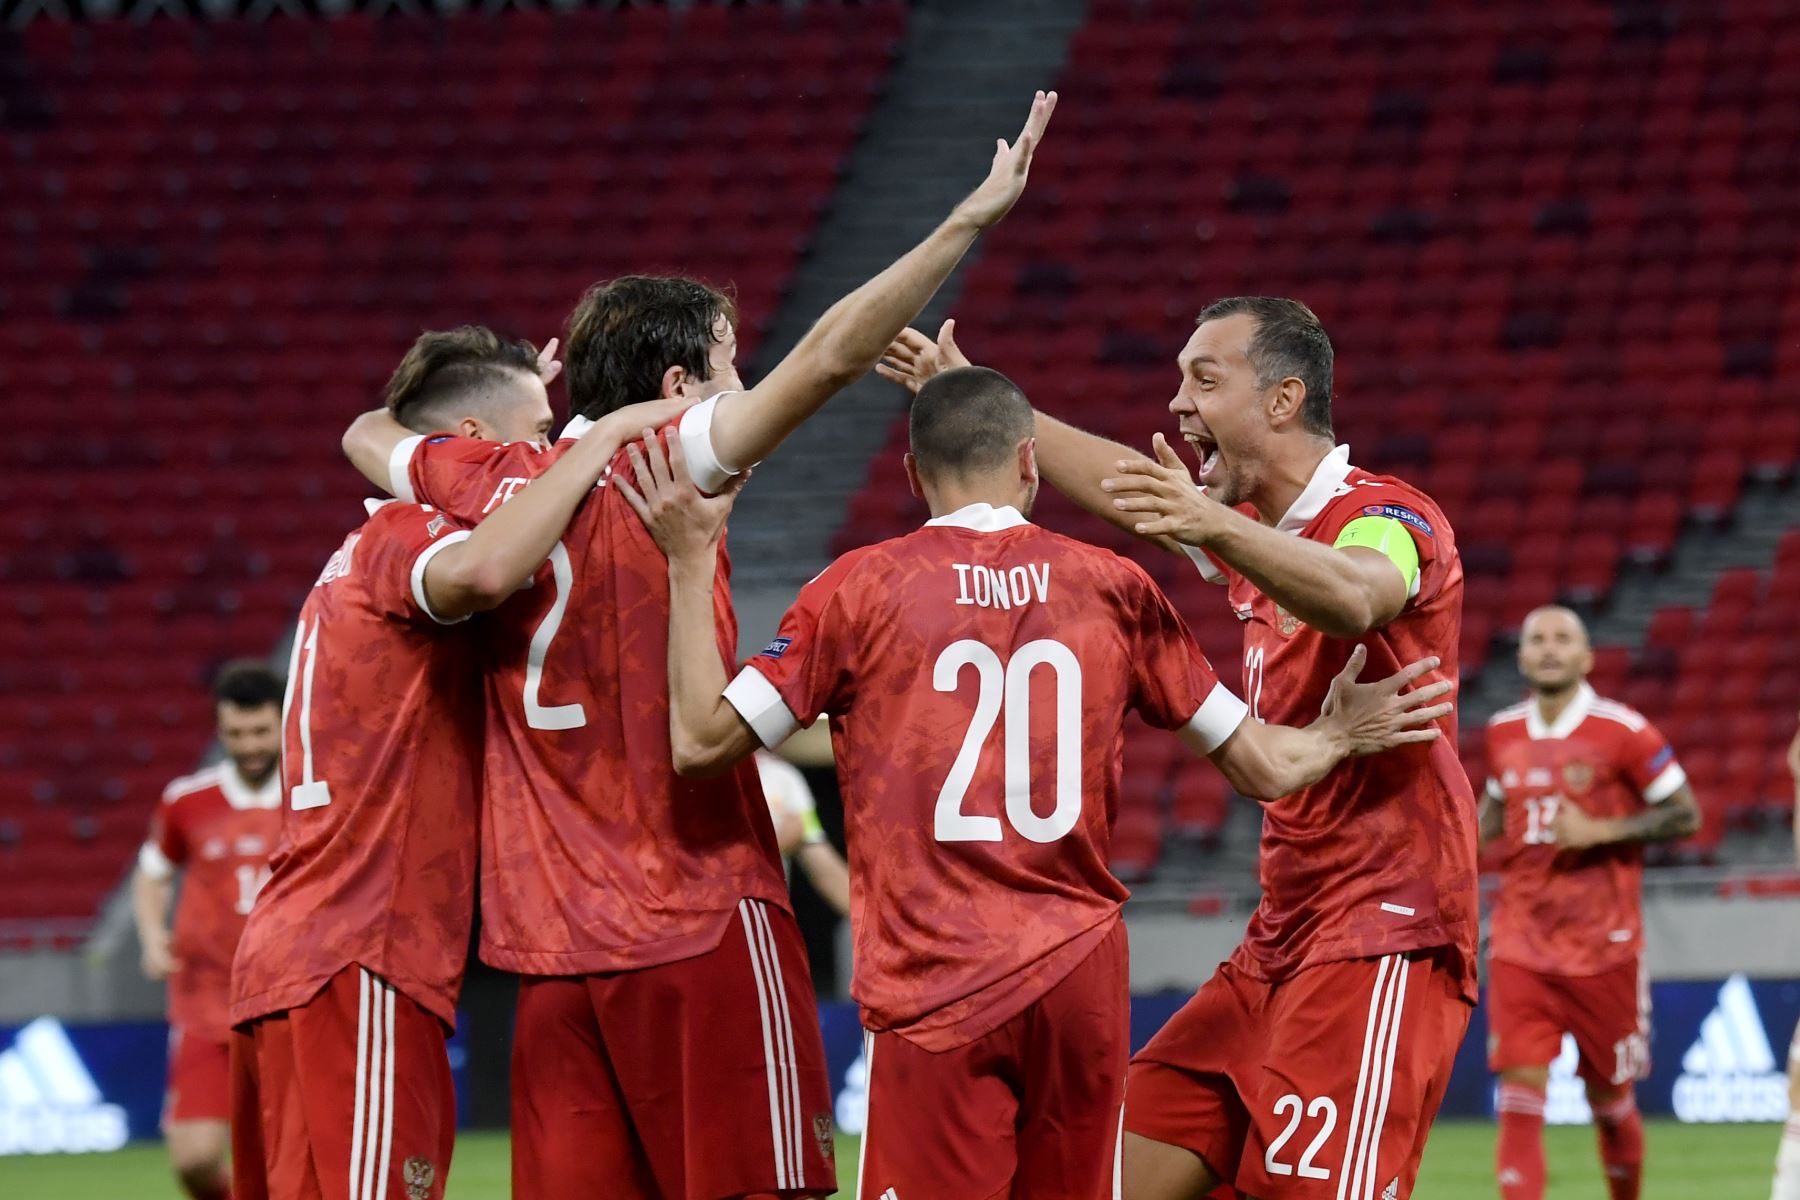 El defensor de Rusia, Mario Fernandes, celebra el gol anotado a Hungría junto a sus compañeros de equipo durante el partido de fútbol de la Liga de Naciones de la UEFA. Foto: AFP